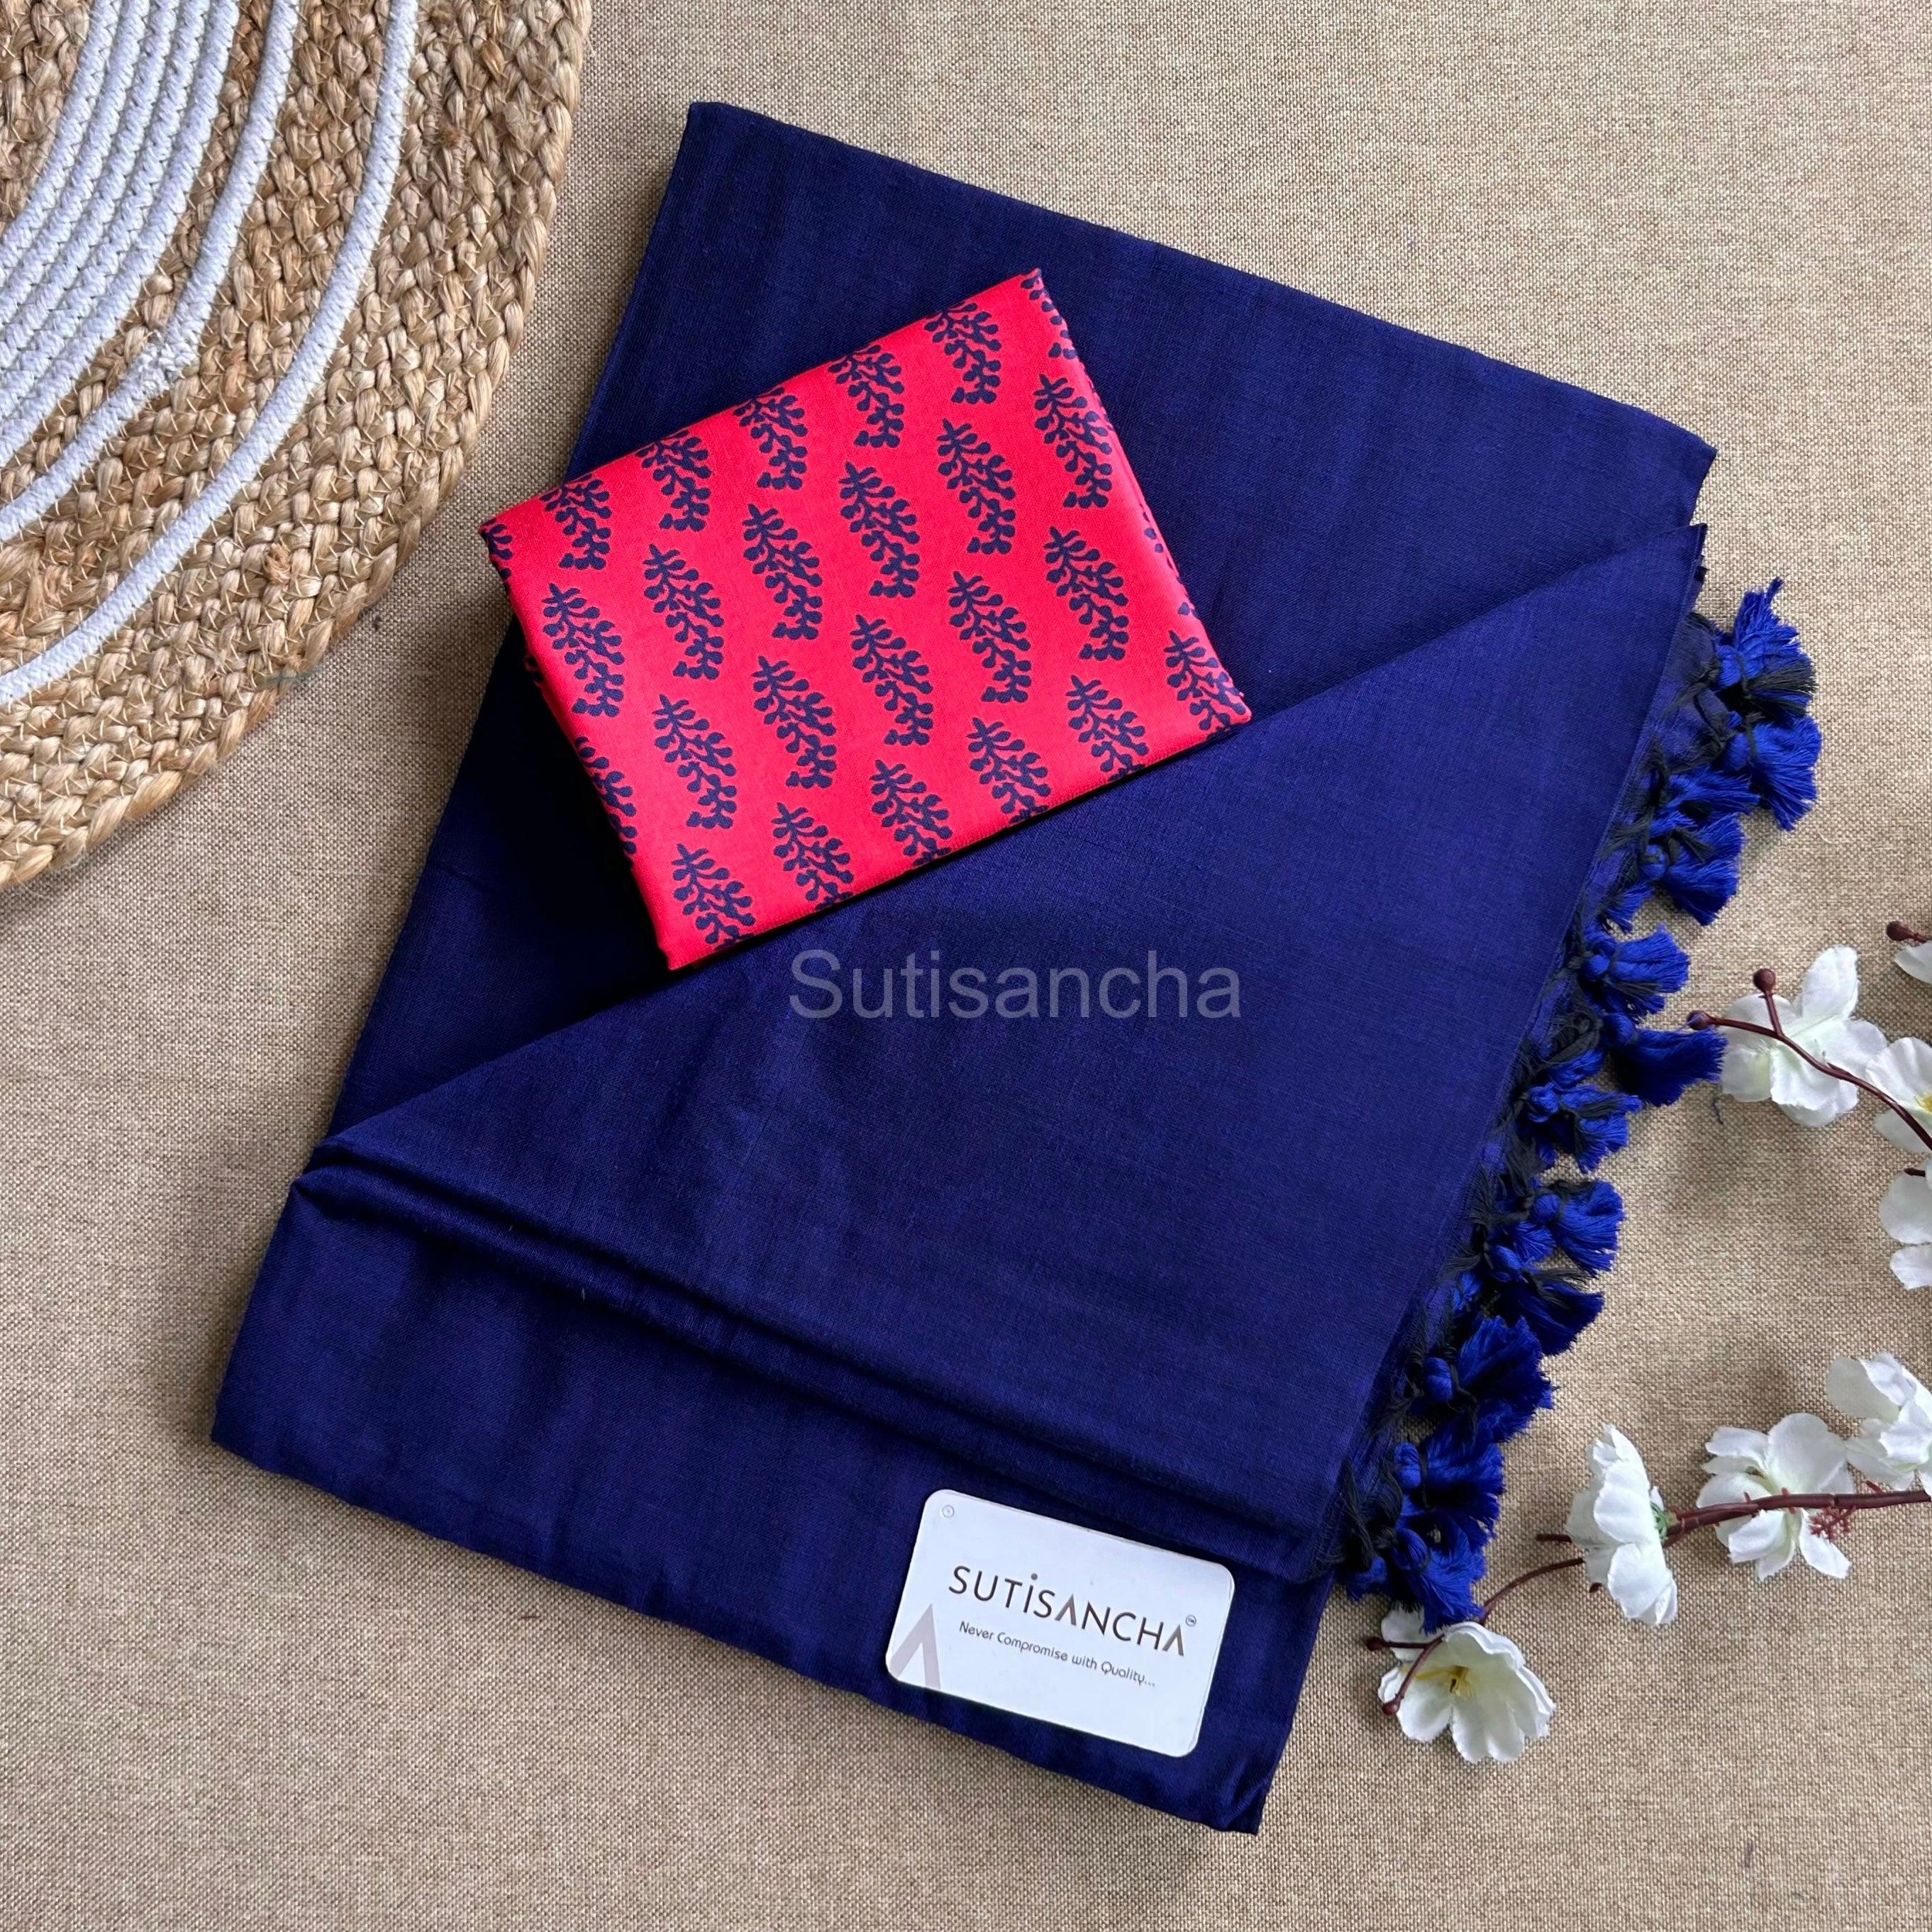 Sutisancha Blue Plain Khadi with Red Cotton Blouse - Suti Sancha